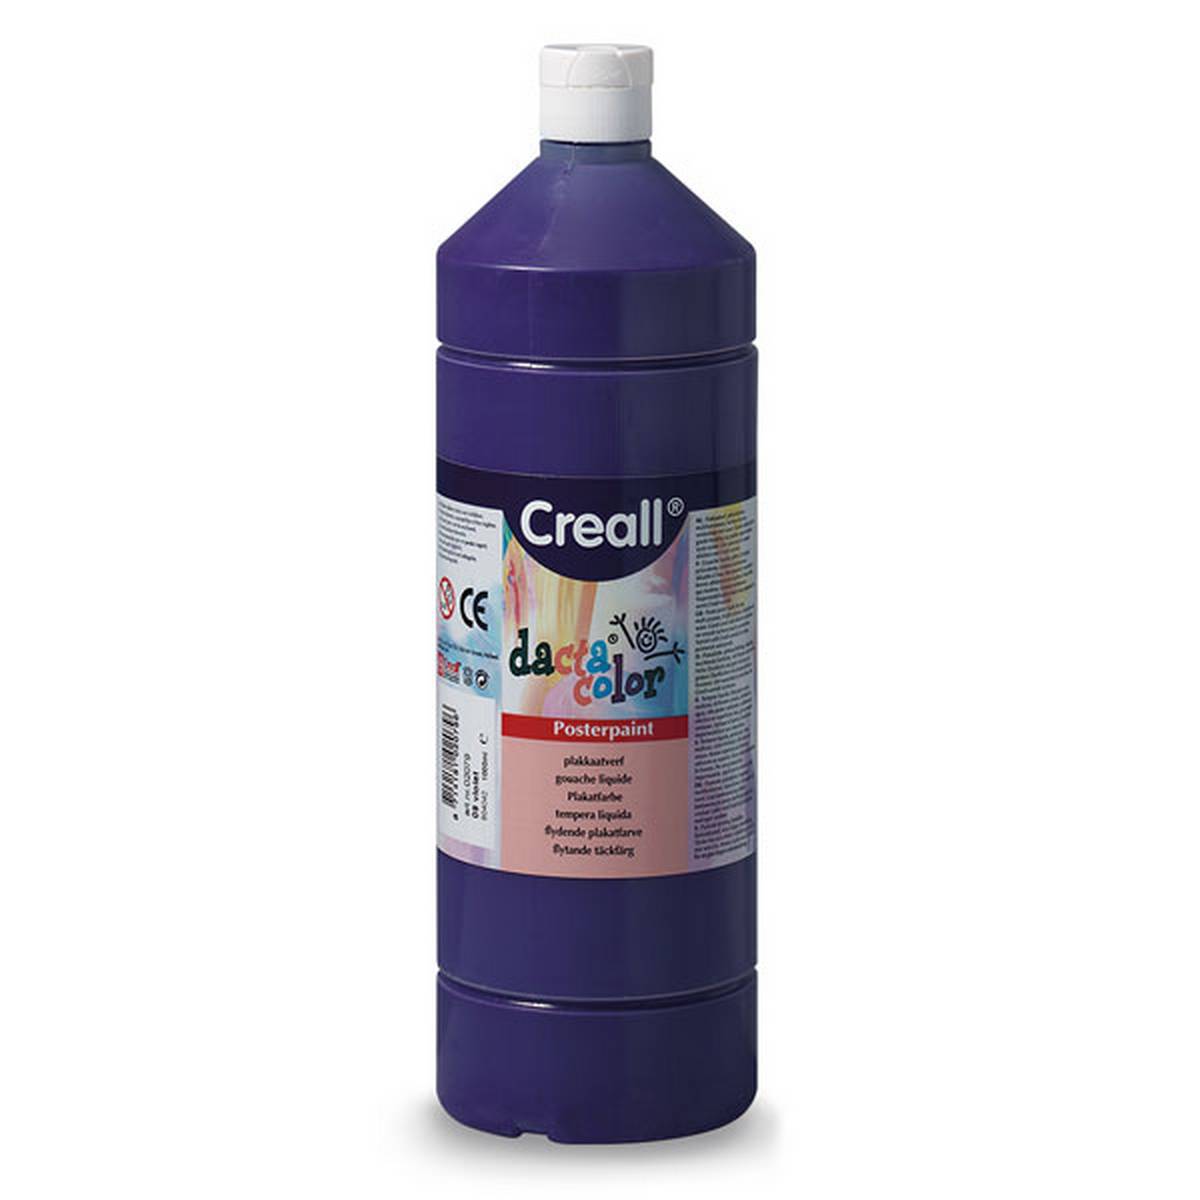 Creall 1 litre Bottle Poster Paint - Purple/Violet